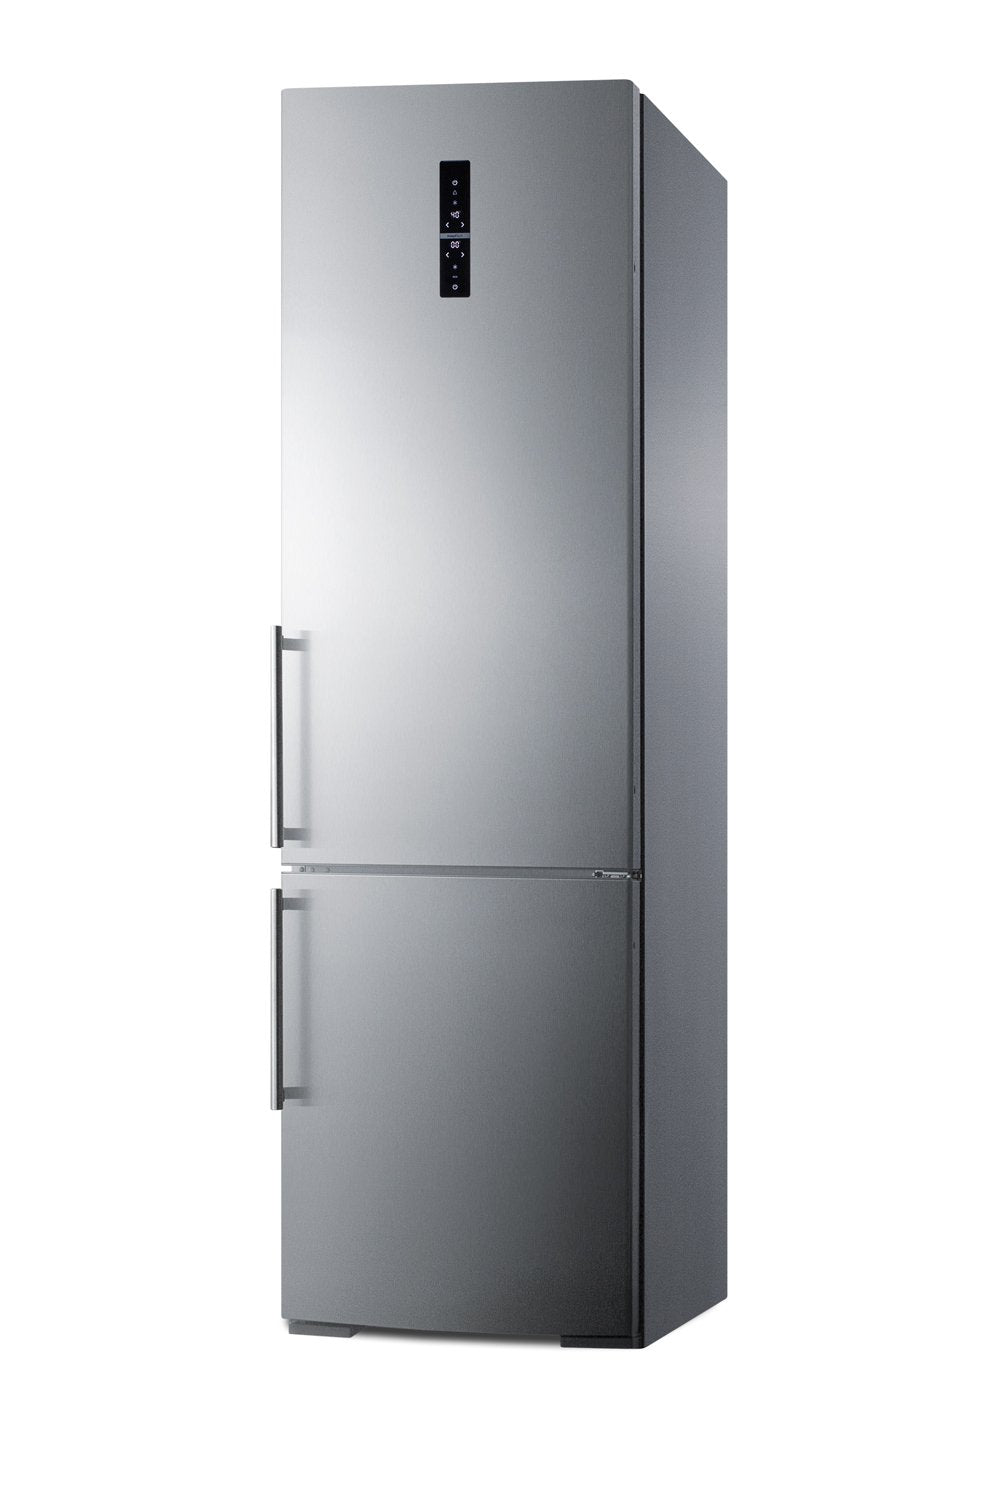 SUMMIT 24 in. Bottom Freezer Refrigerator (FFBF181ES)